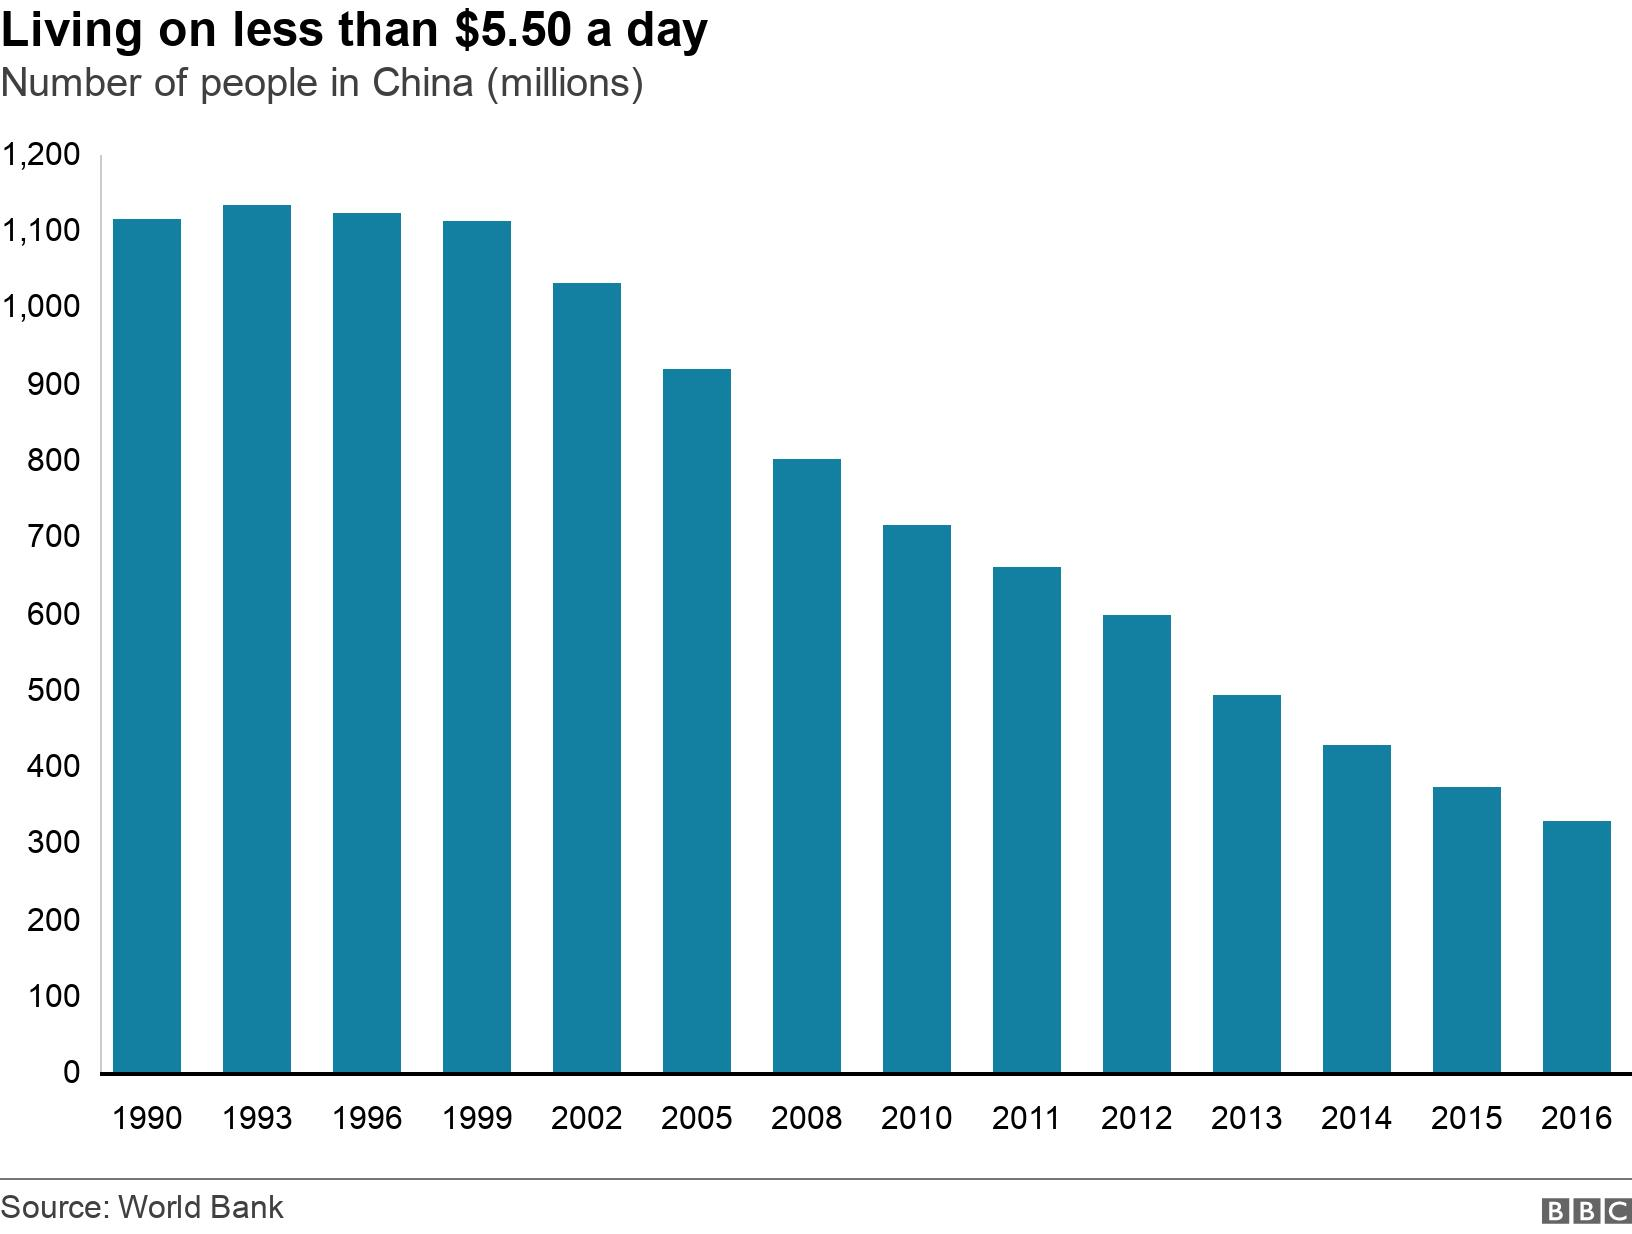 圖表顯示中國每天生活費低於 5.5 美元的人數（百萬）